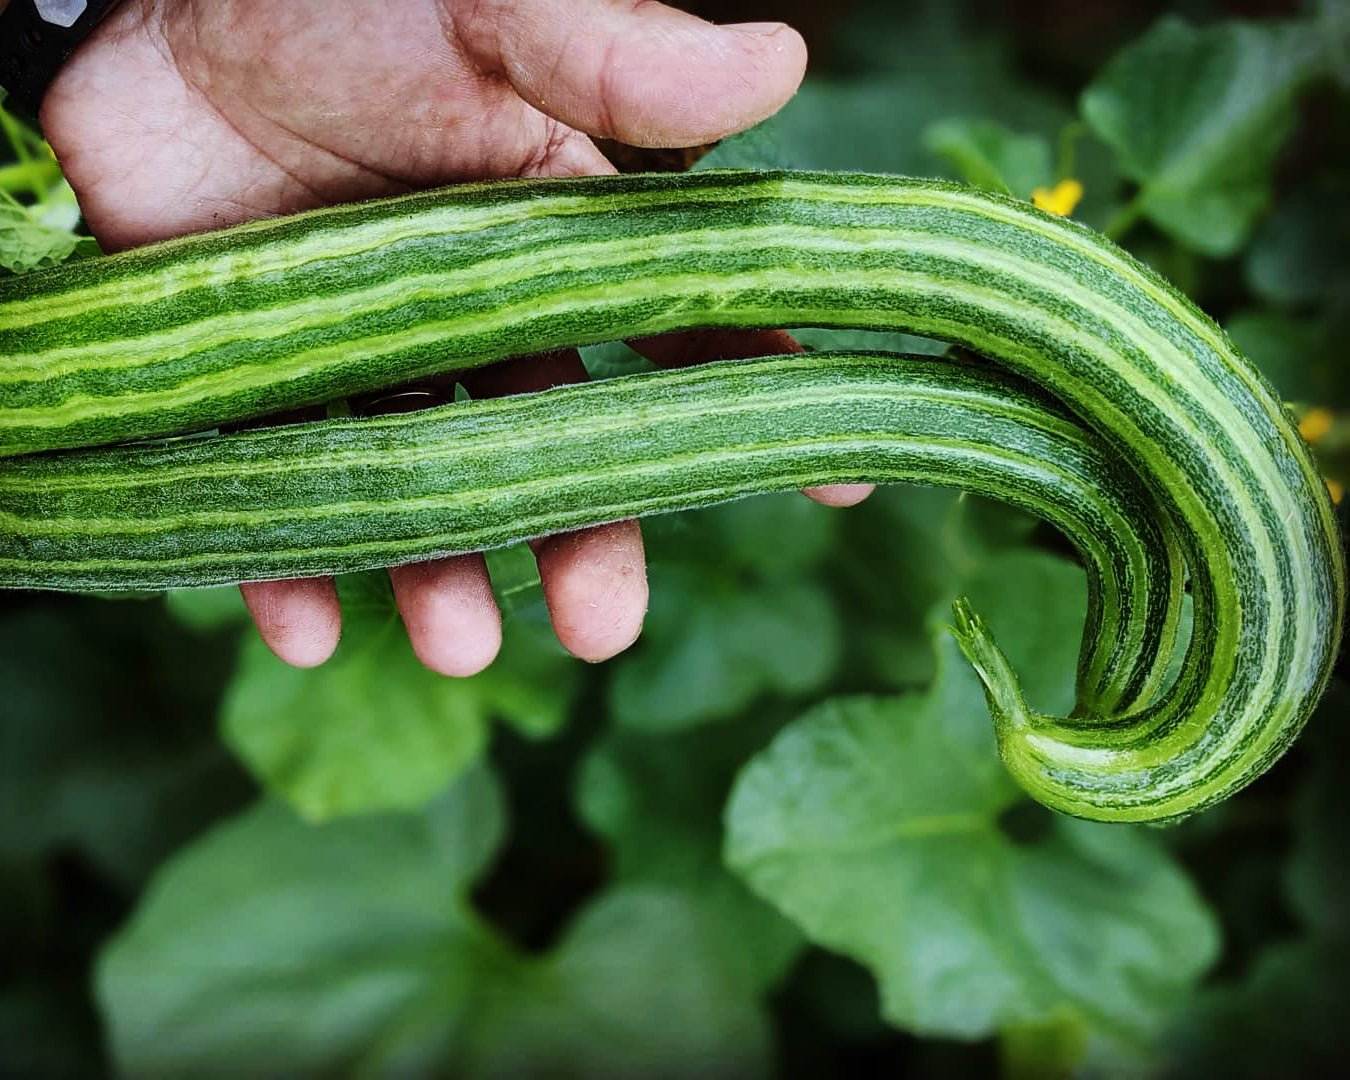 Cucumber: Armenian